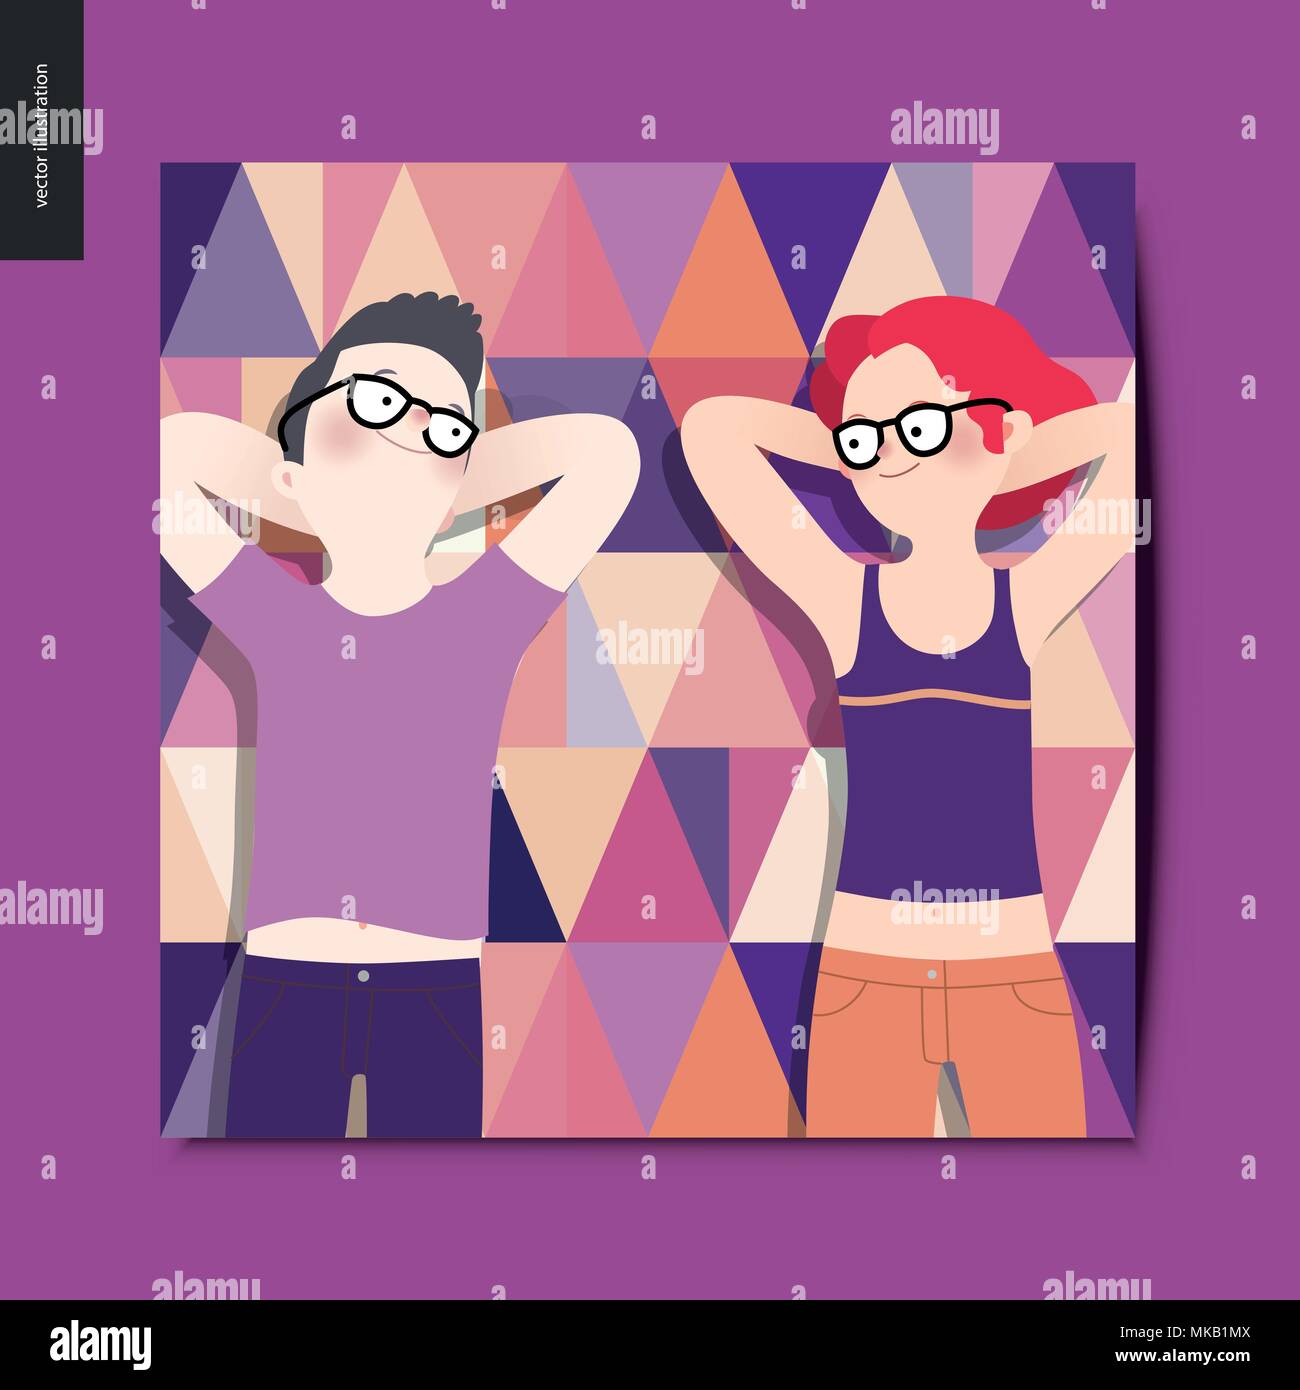 Einfache Dinge - junges Paar auf Picknick, Ansicht von oben - Flachbild cartoon Vector Illustration von Frau und Mann zur Festlegung auf Dreieck gemusterten purple Plaid, s Stock Vektor